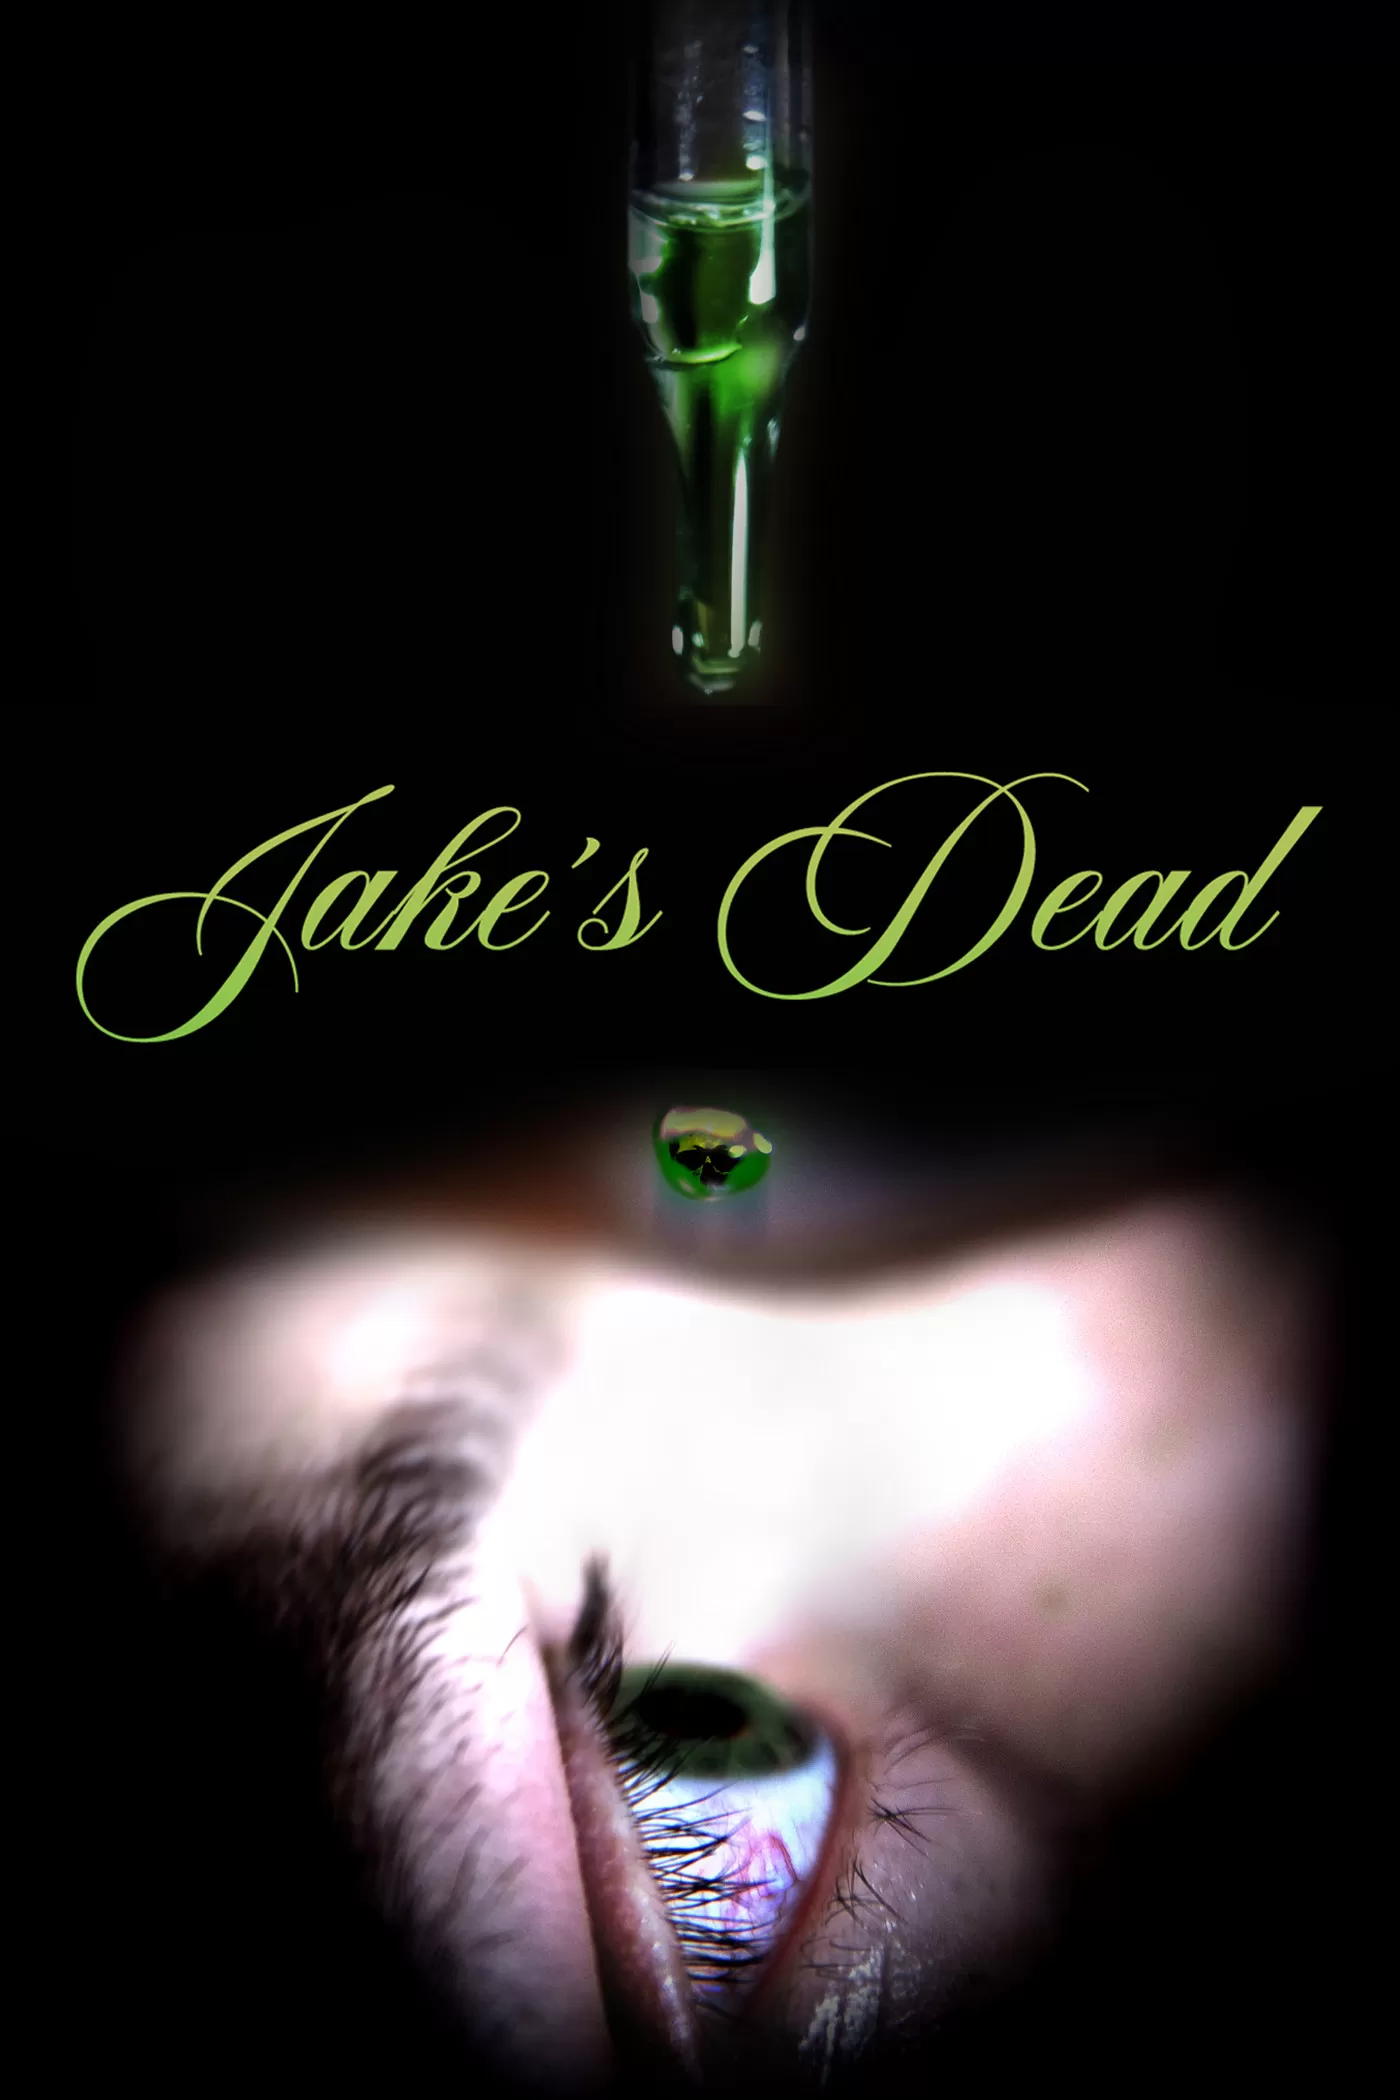 Jake's Dead